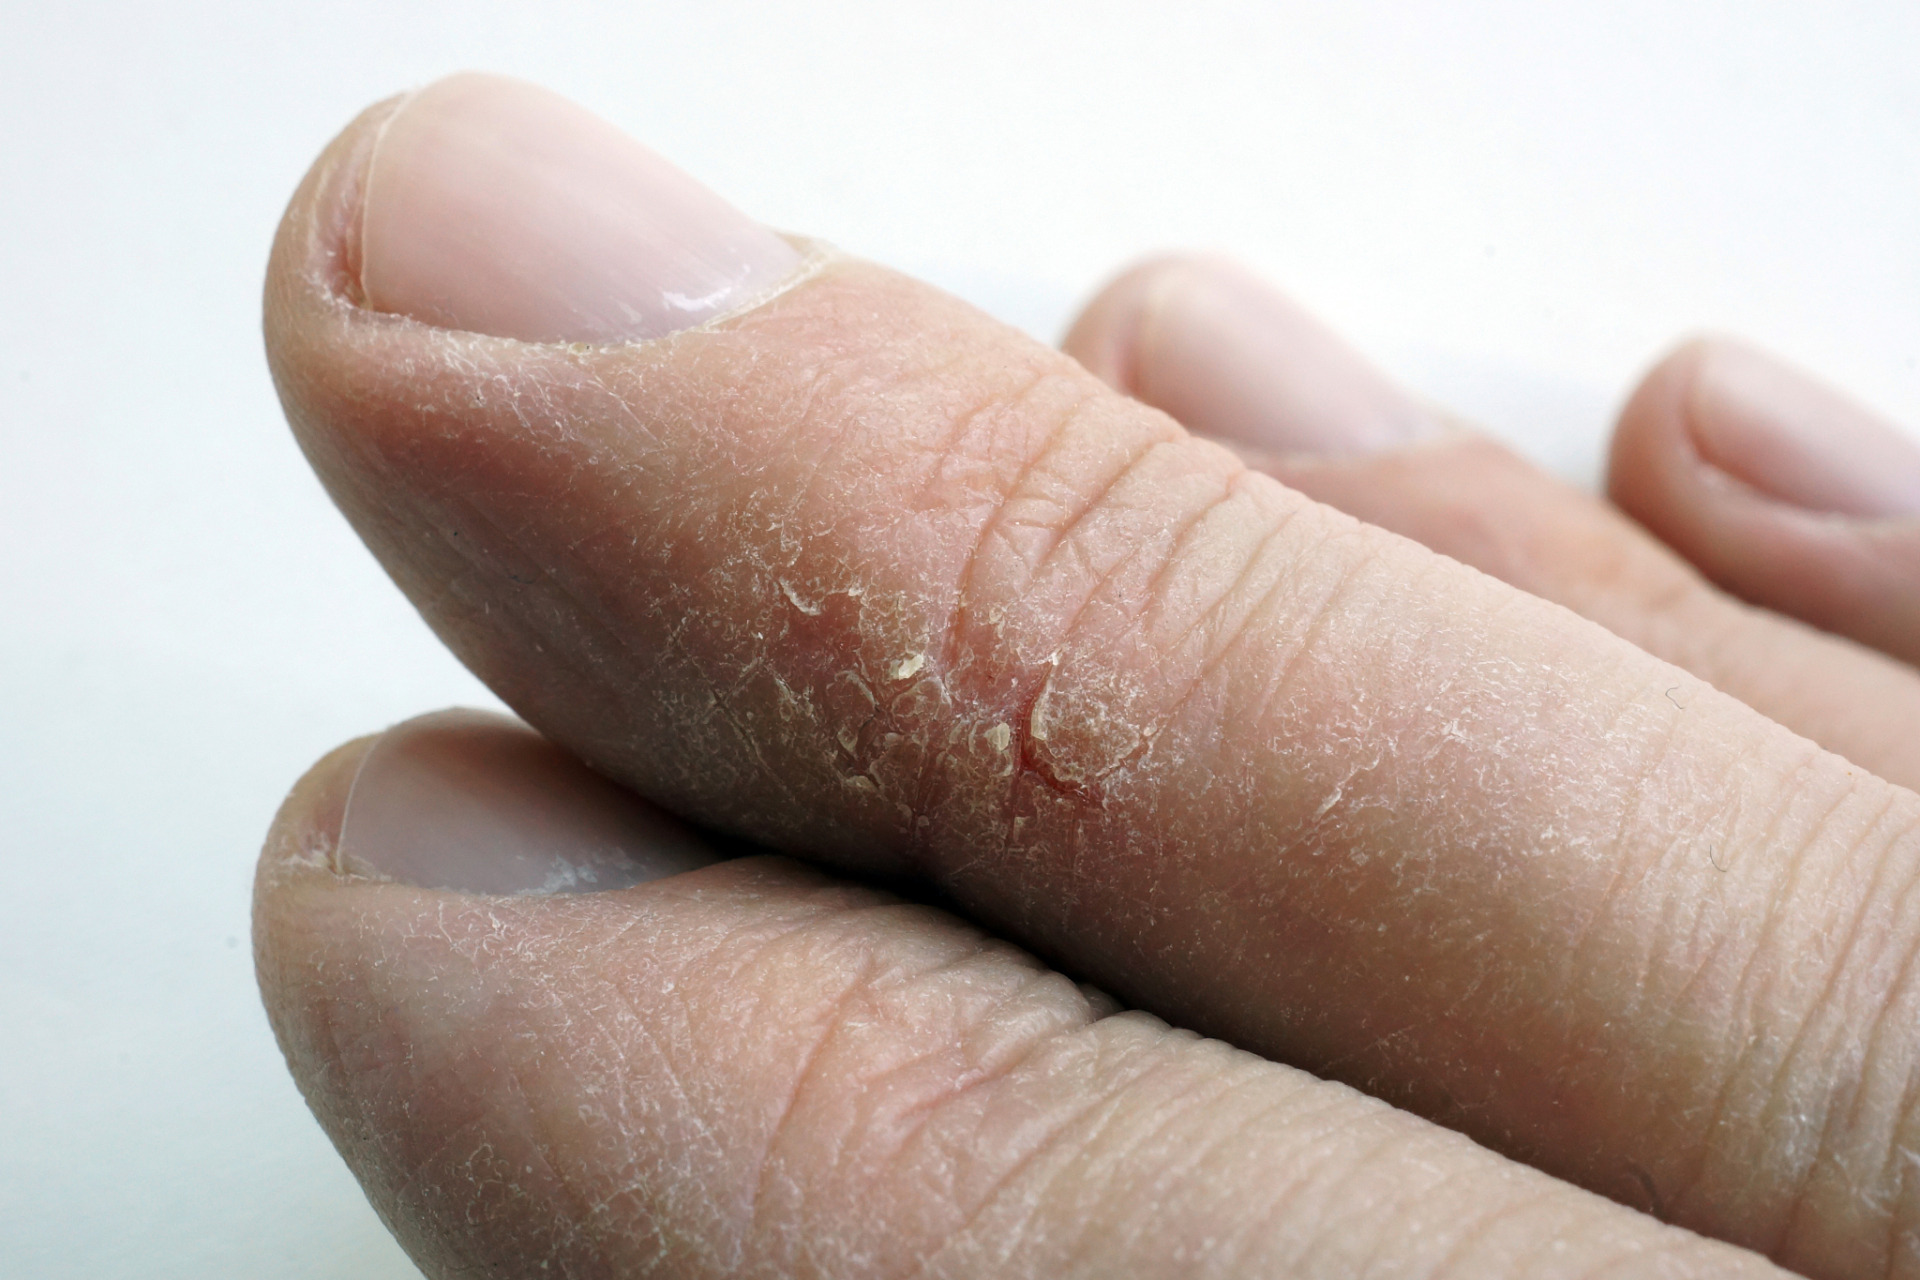 1,汗疱疹:汗疱疹是一种常见的皮肤病,通常表现为手和手指侧面出现